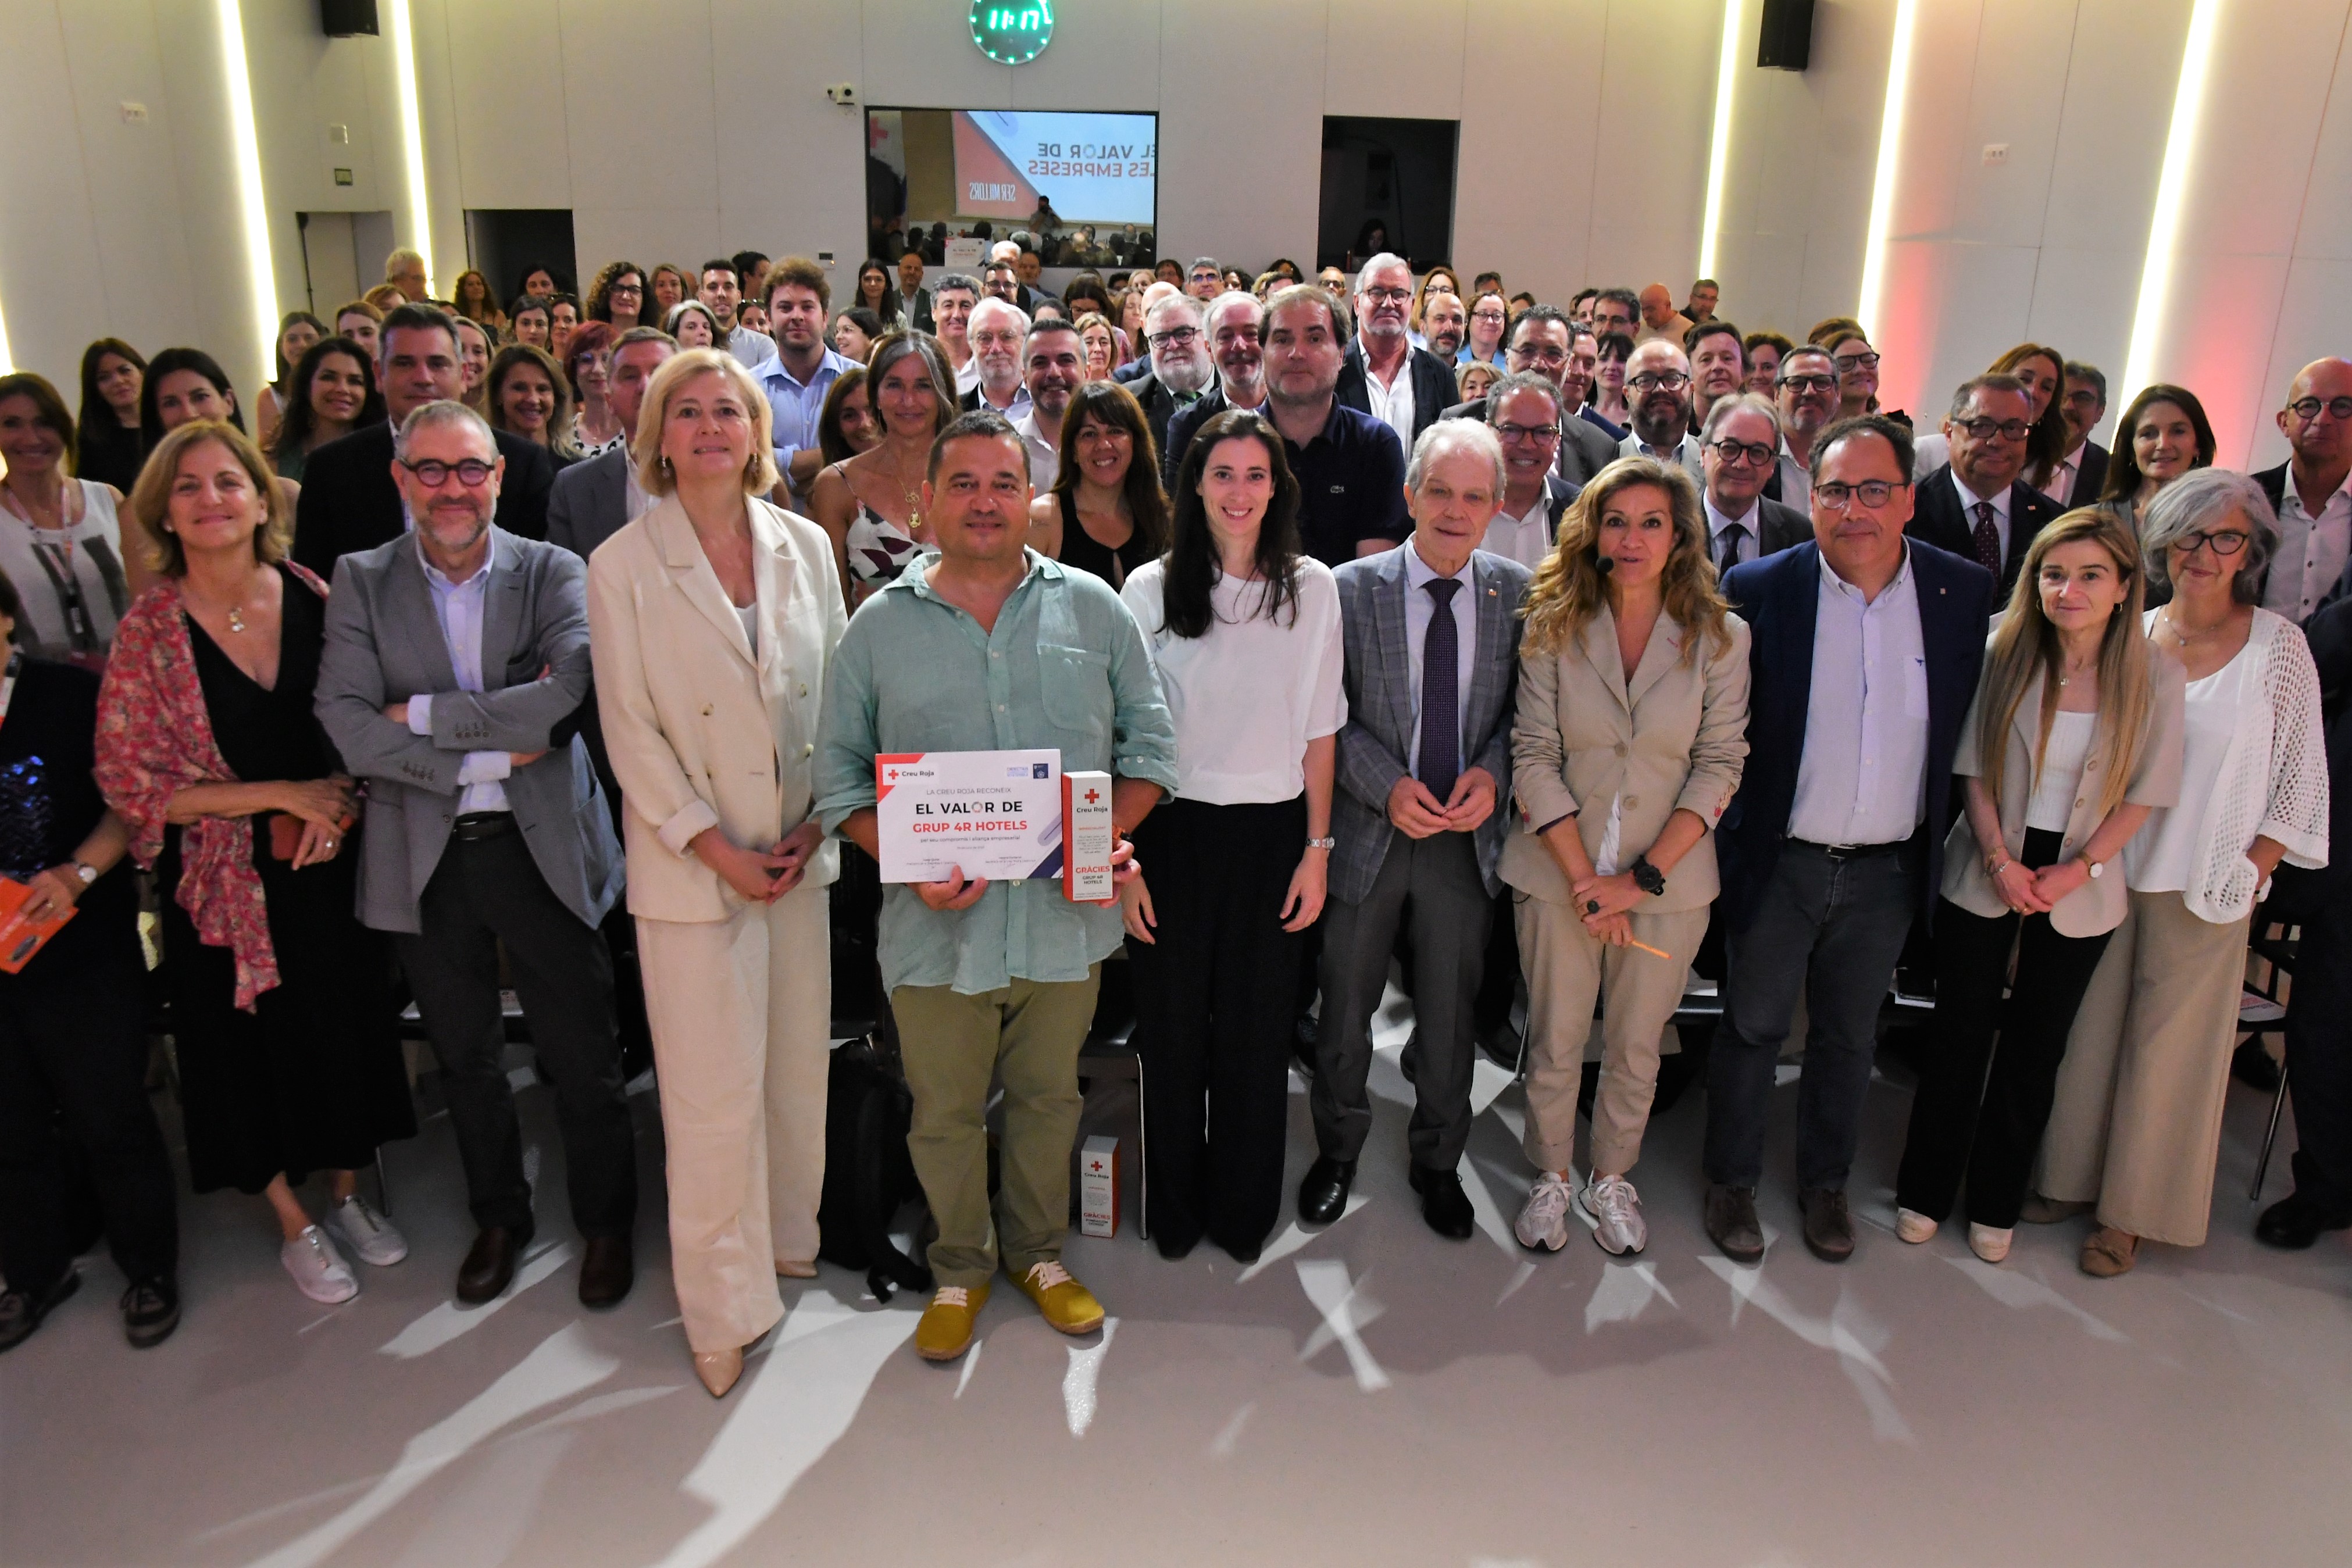 La Creu Roja distingeix la tasca de les empreses compromeses amb la seva acció a Catalunya